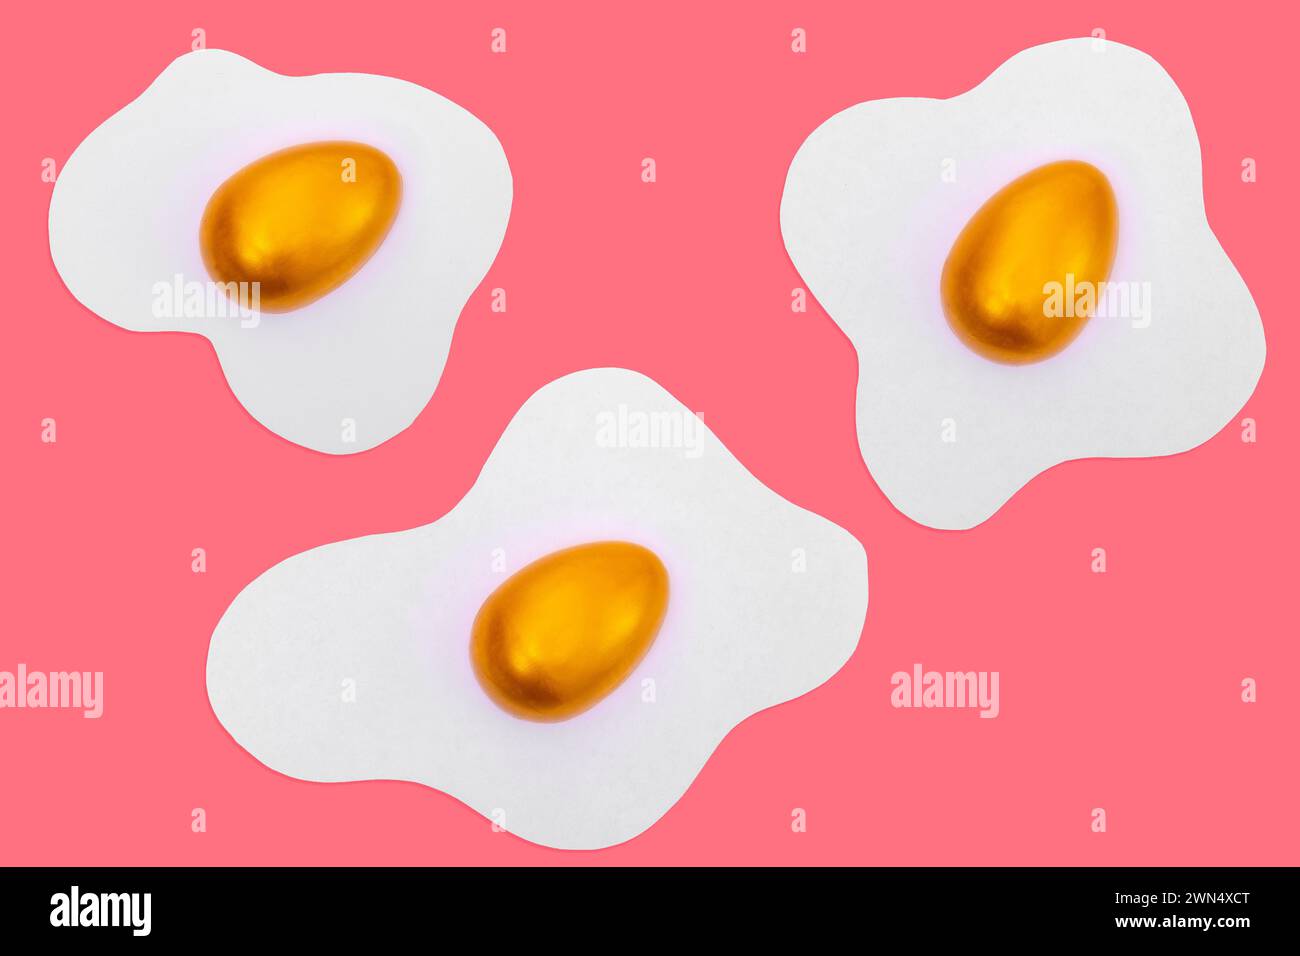 Disposition créative faite d'œufs brouillés avec des œufs de Pâques dorés décorés sur un fond rose. Fond de motif rose minimal. Vacances de printemps Concepp Banque D'Images